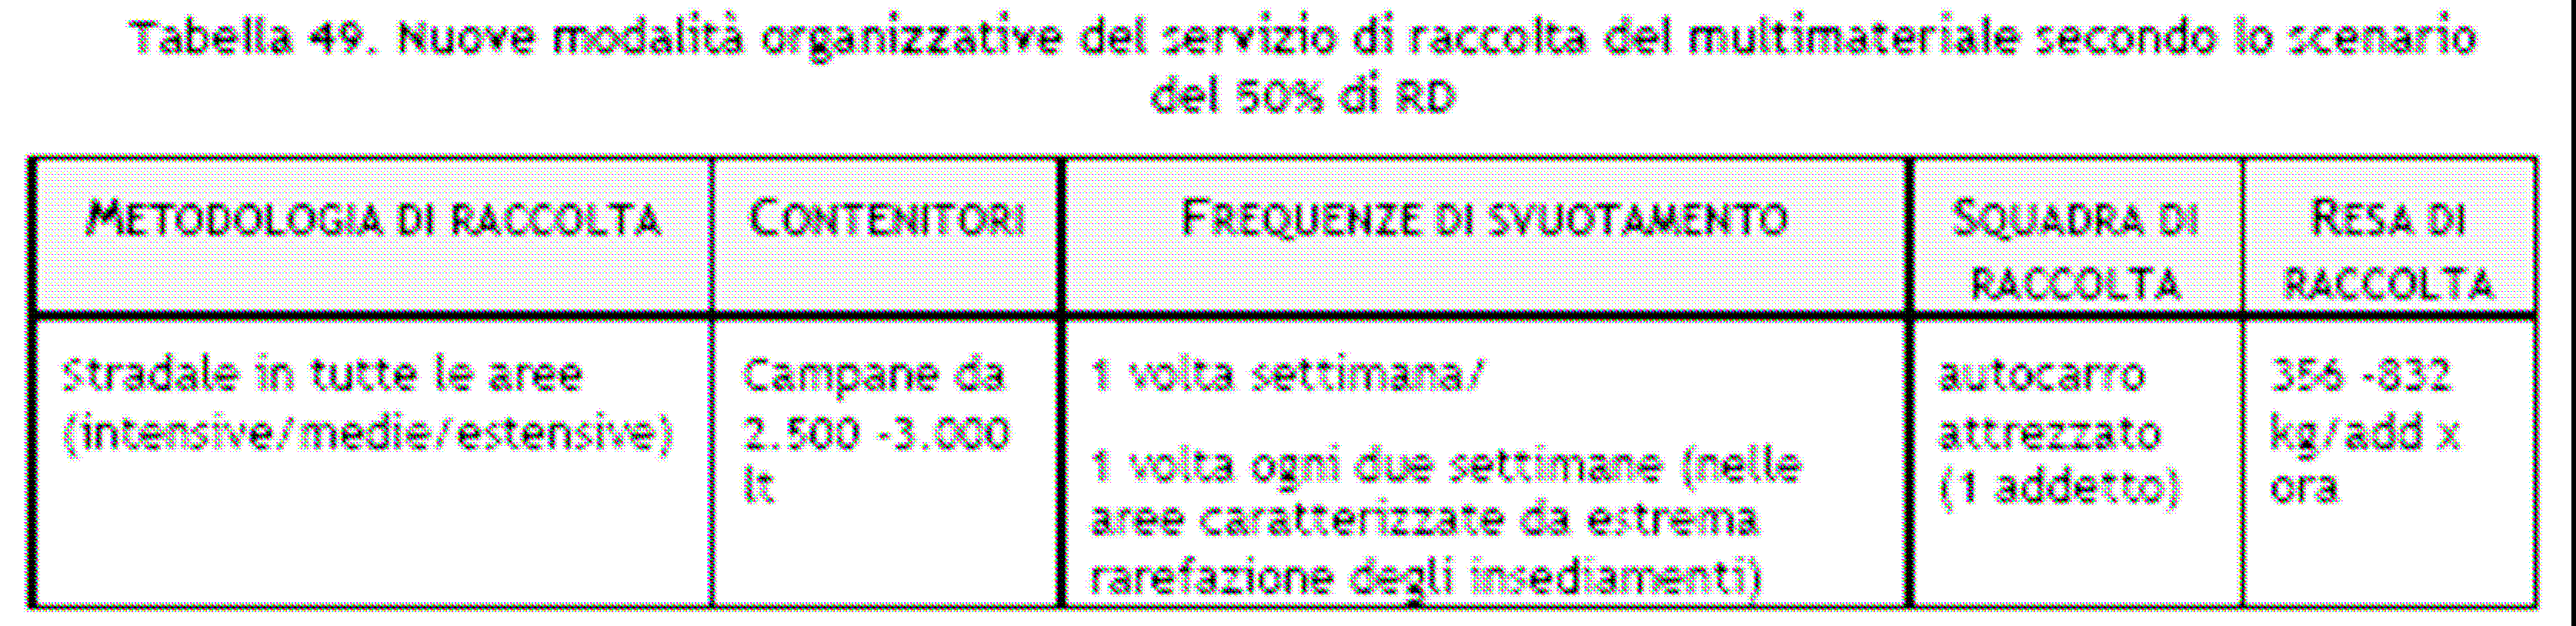 Tabella 12.15 Nuove modalità organizzative del servizio di raccolta carta/cartone secondo lo scenario del 50% di RD.